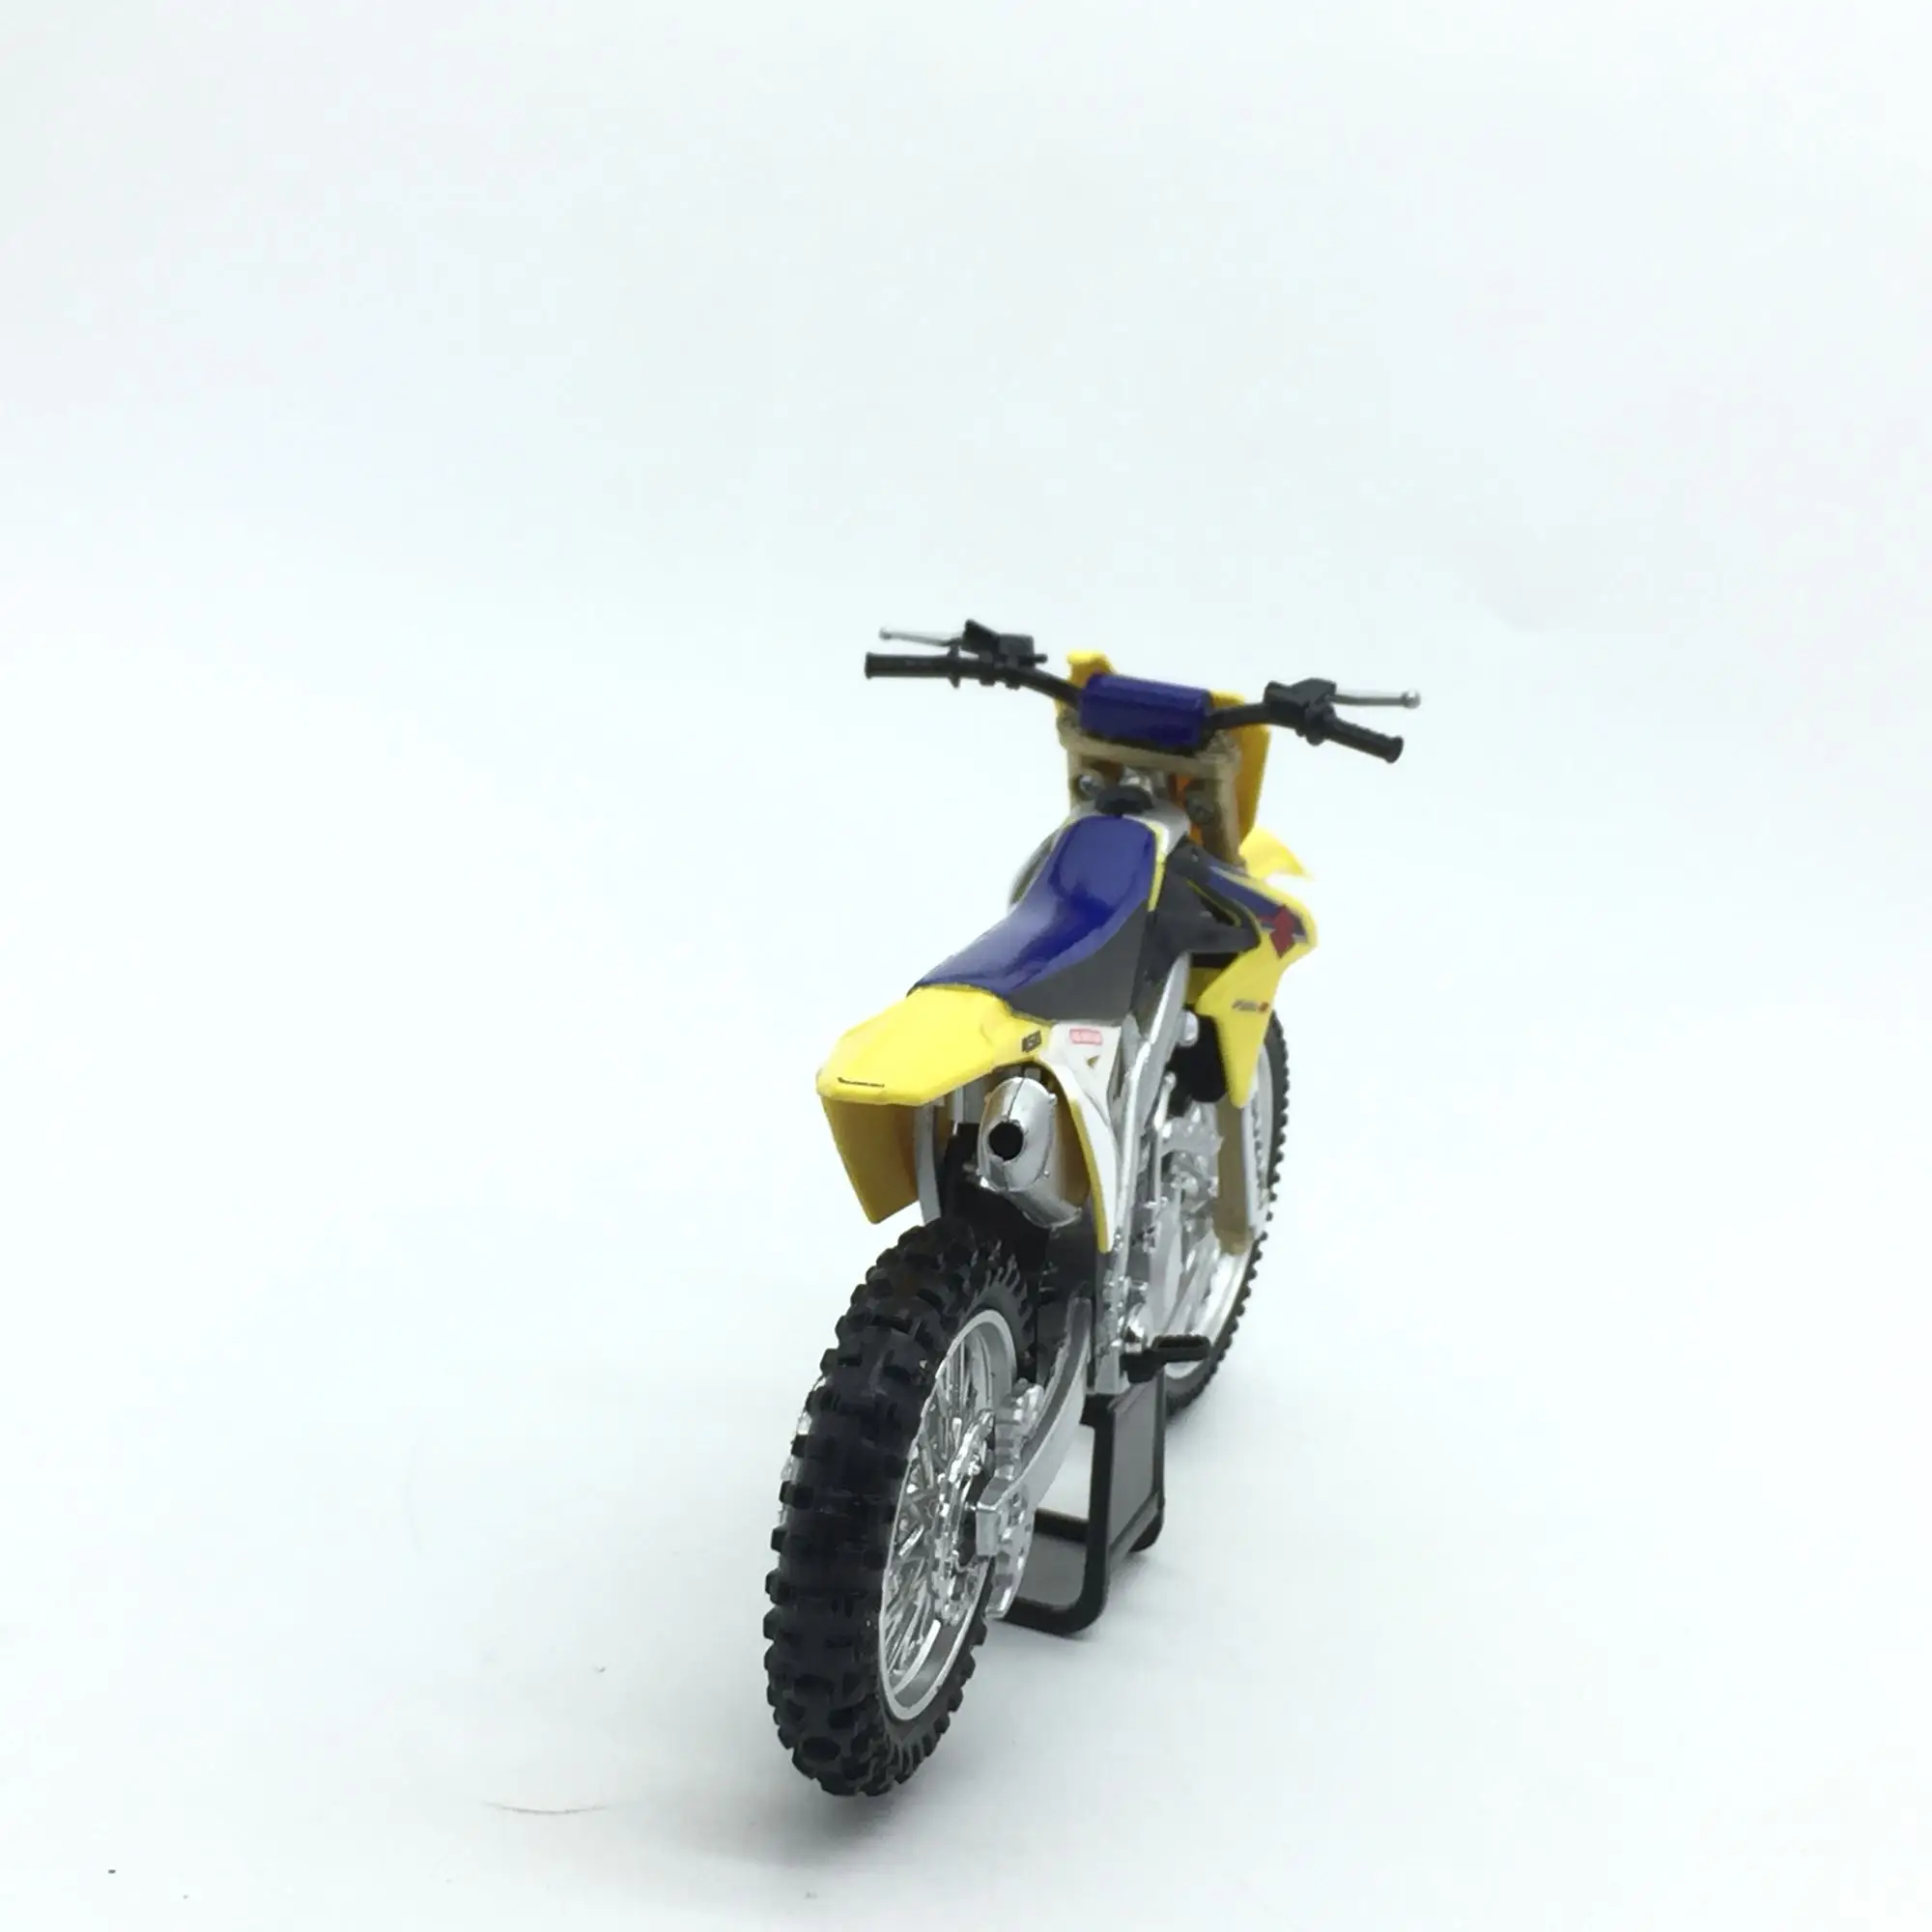 5 шт./лот оптовая продажа NEWRAY масштаба 1/12 мотоцикл модель игрушки SUZUKI RM-Z литья под давлением Металл мотоциклов Модель игрушки